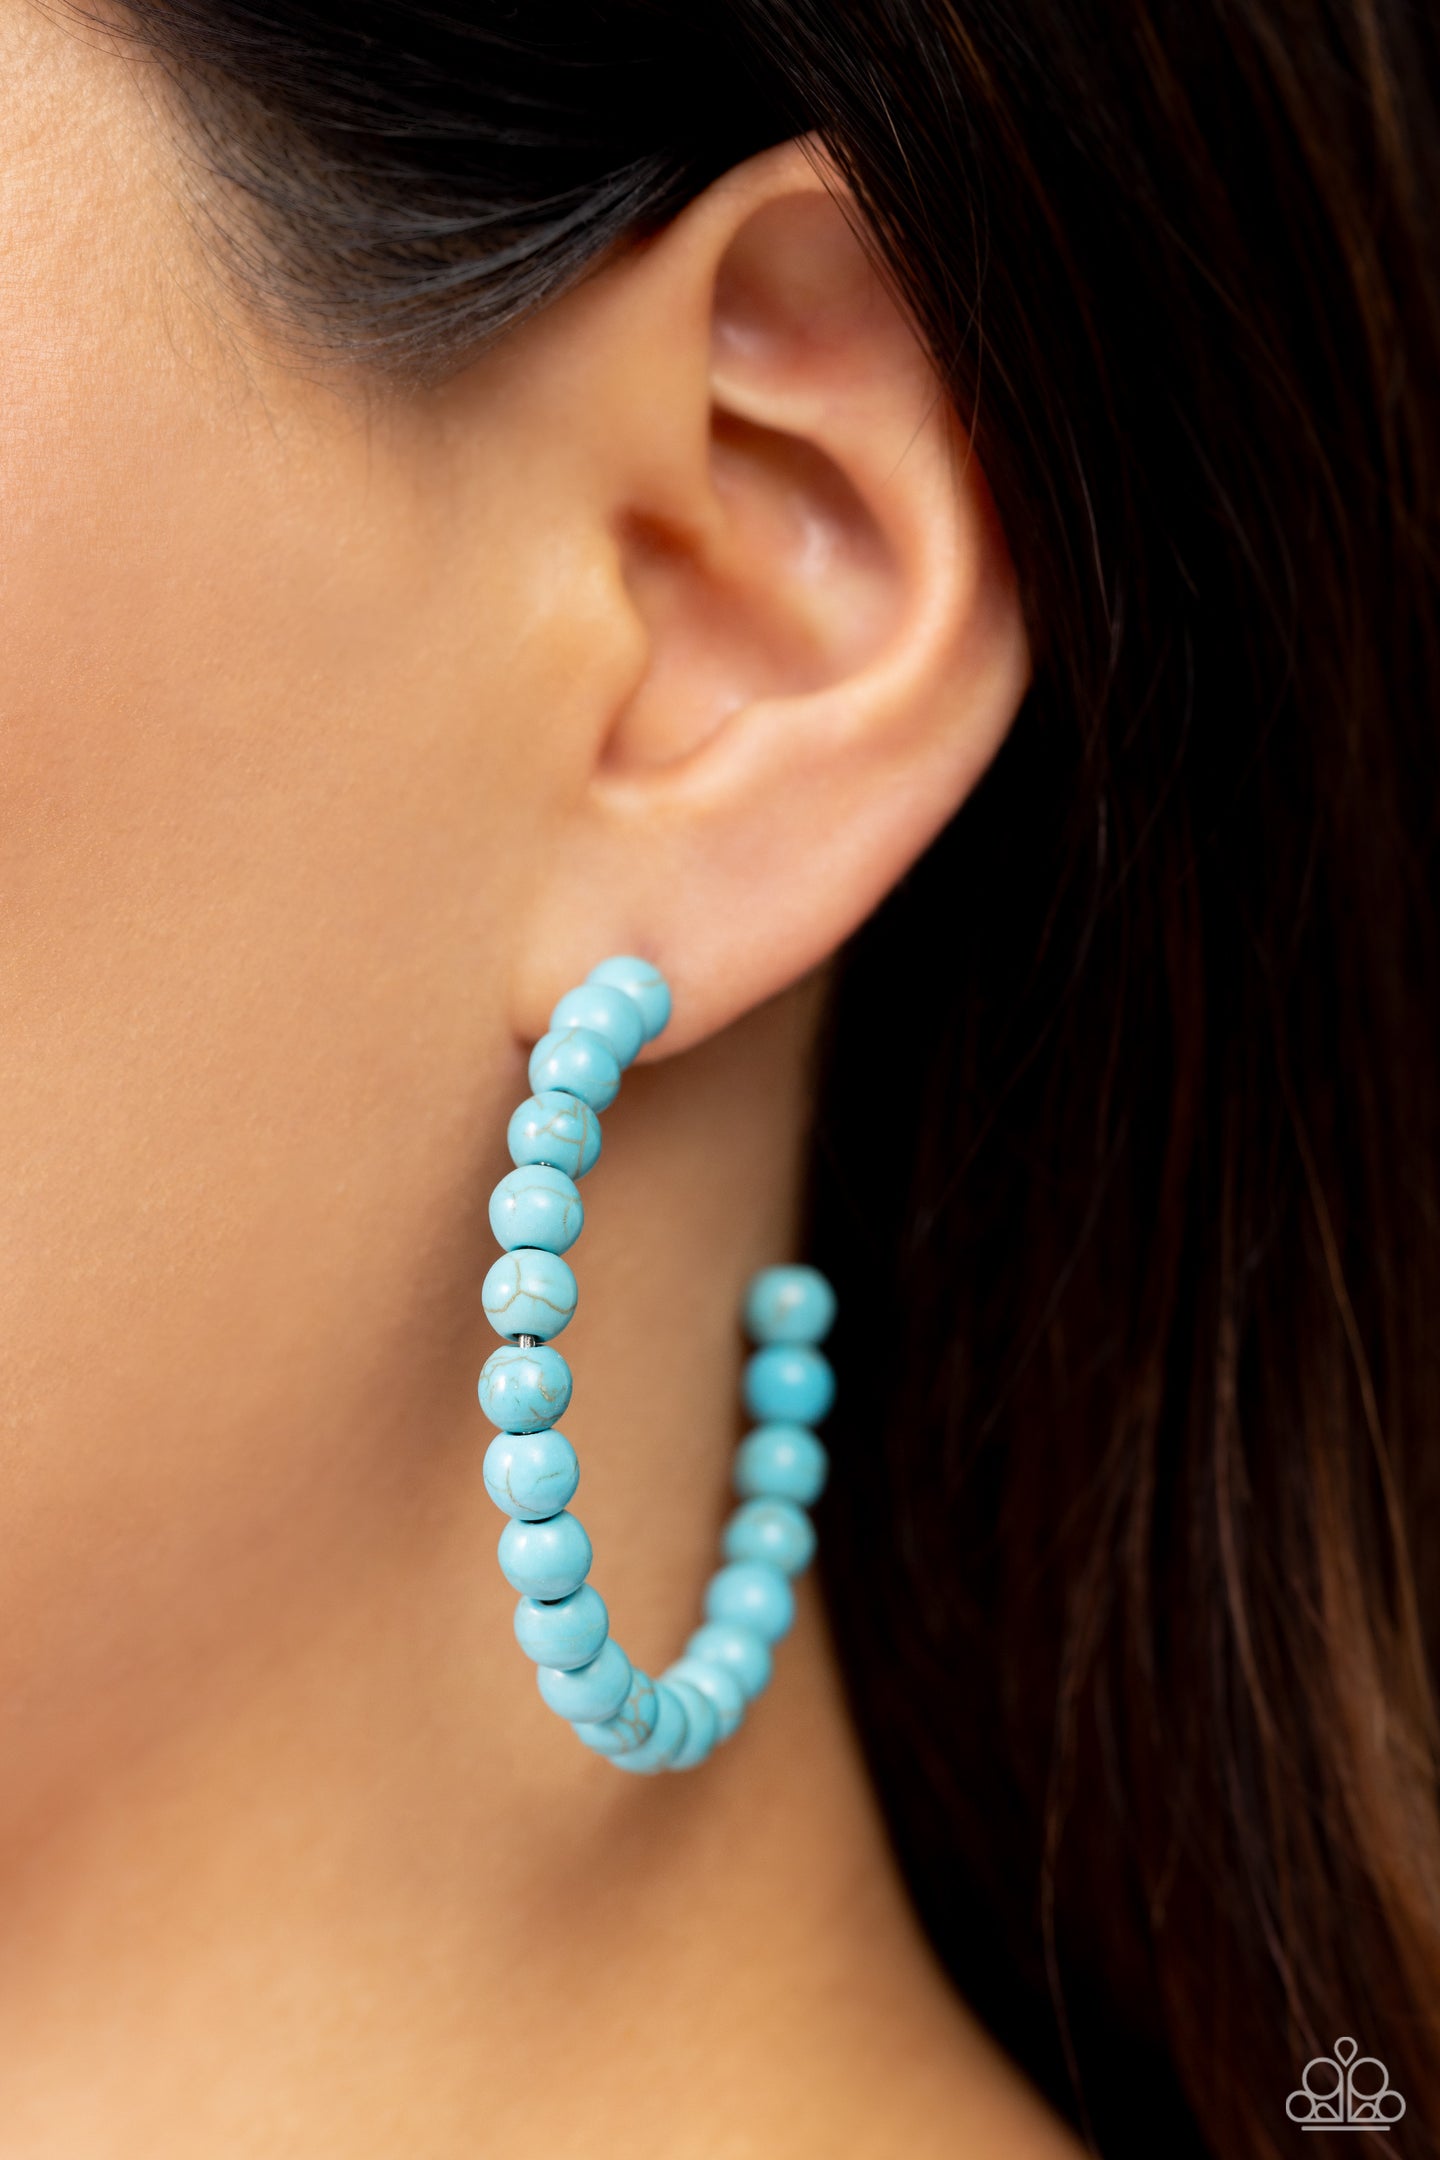 Rural Retrograde - Blue earrings